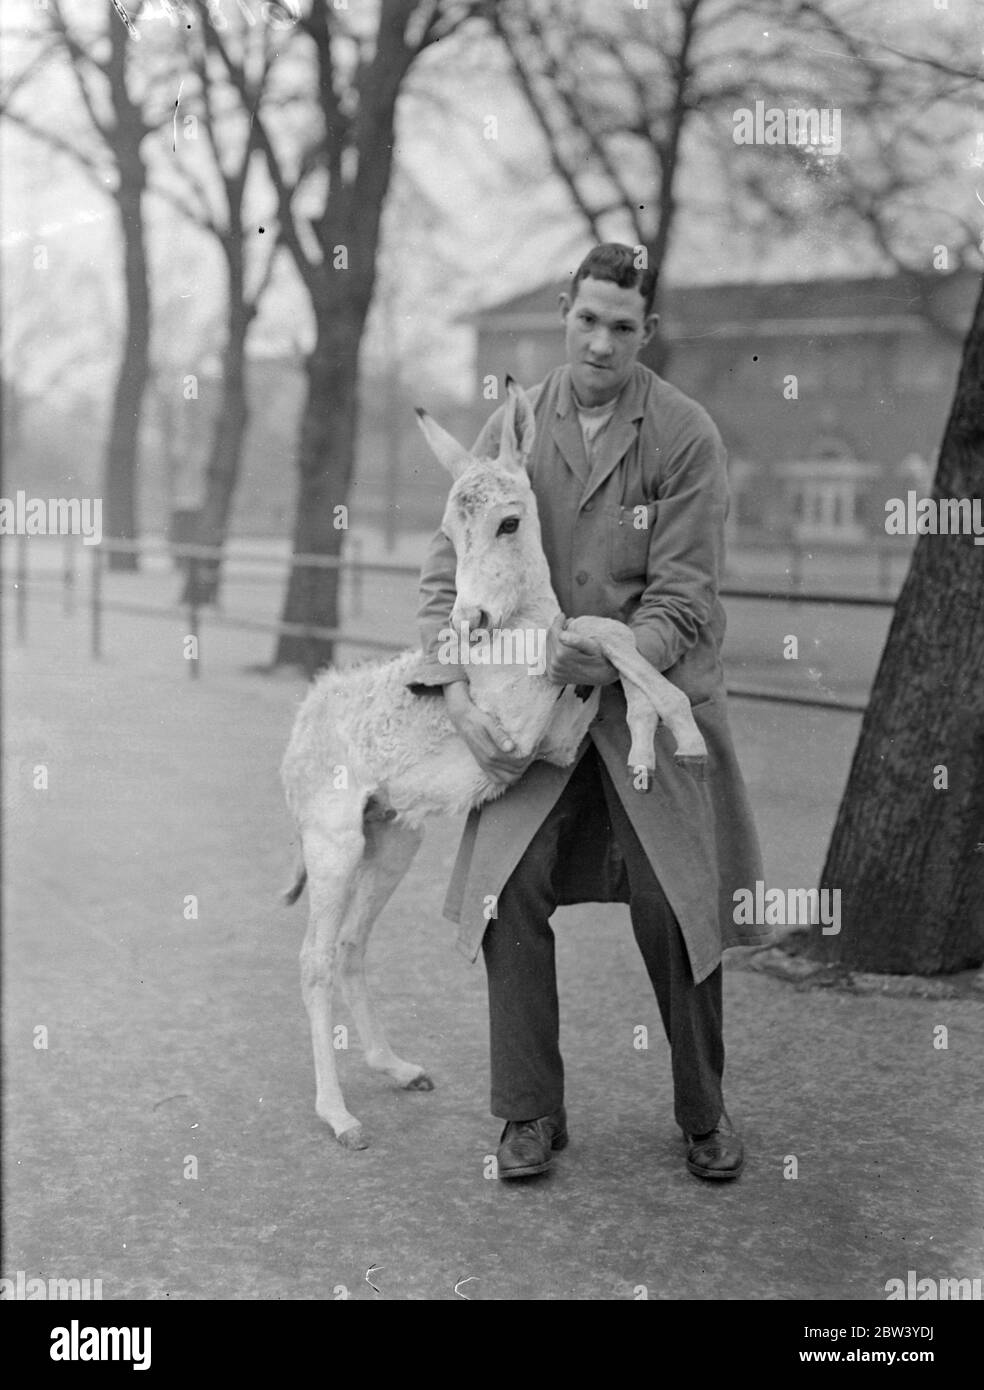 Le bébé du zoo Onegar a huit semaines. Rocket, le bébé vinaigre du London Zoo a exactement 8 semaines. Il a été élevé sur la bouteille. Pour un cadeau d'anniversaire, il a été emmené pour une promenade par le gardien C Hersey. Spectacles photo: Lance-roquettes pour sa marche d'anniversaire avec le gardien C heresy. 24 février 1937 Banque D'Images